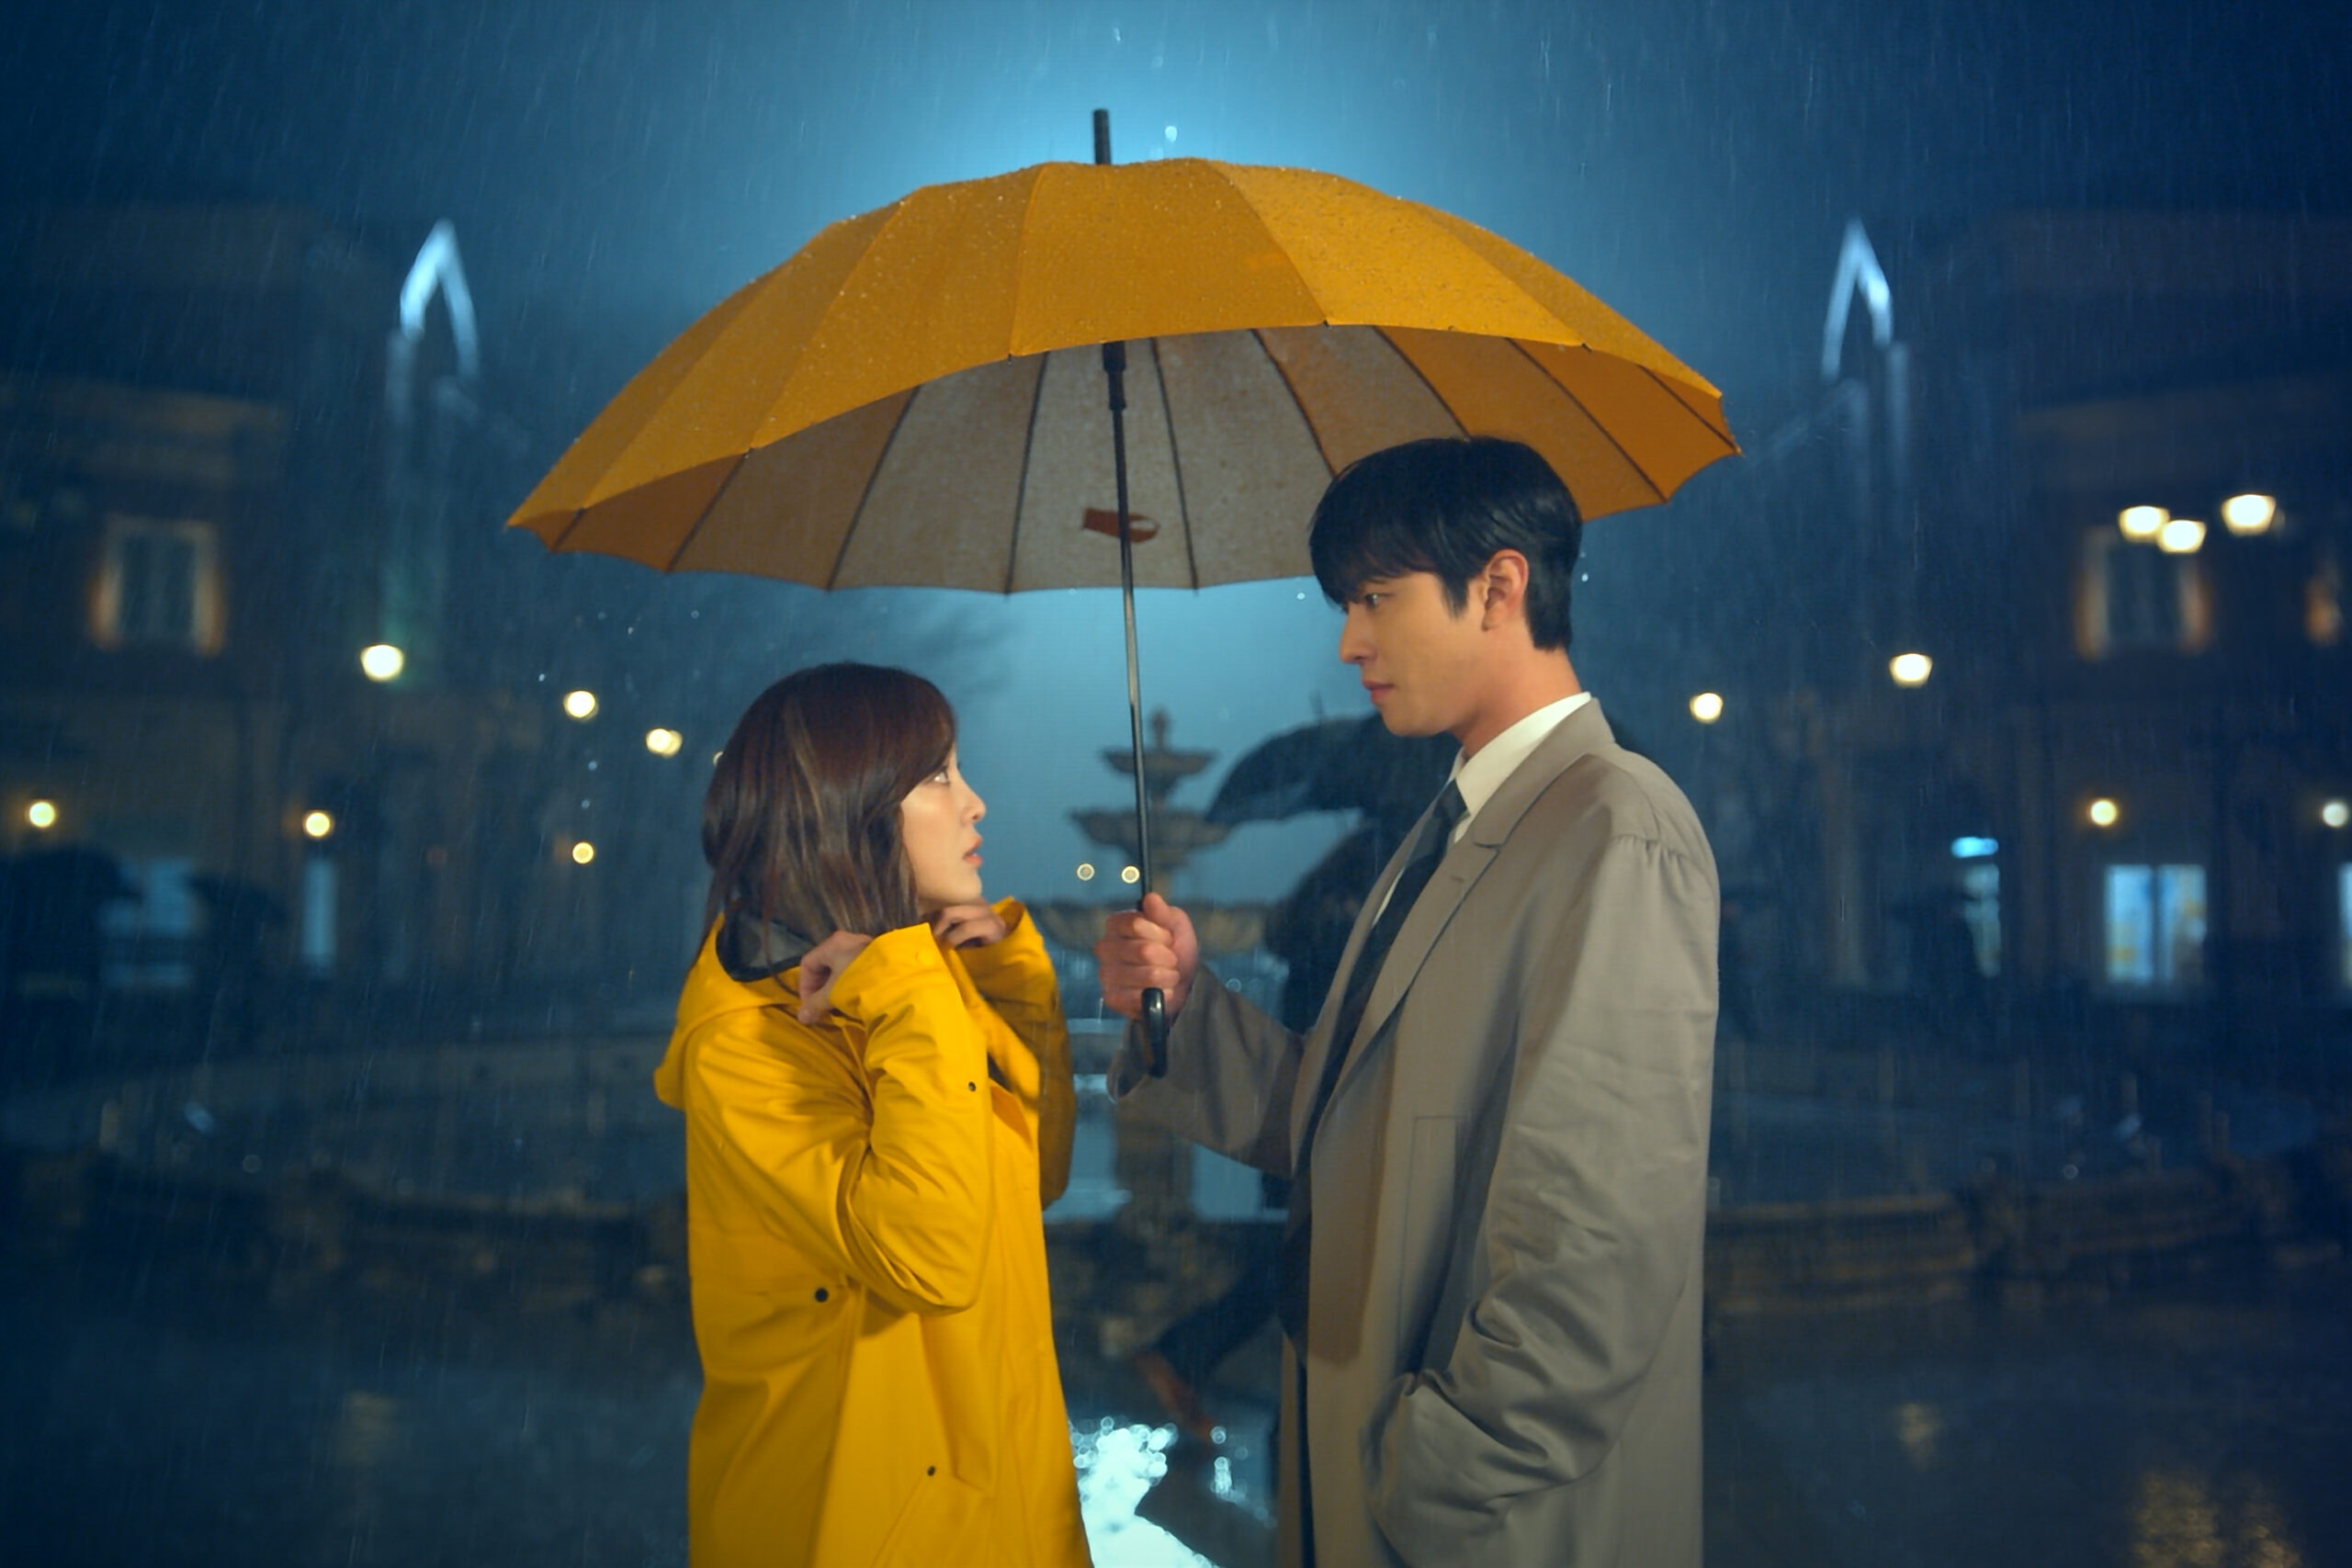 Cena da minissérie Pretendente Surpresa. Ha-ri (Kim Se-jeong) e Tae-moo (Ahn Hyo-seop) estão parados, sob a chuva, encarando um ao outro. Ha-ri, à esquerda, é uma mulher coreana magra de cabelos castanhos-escuros longos, usando uma capa de chuva amarela que cobre o seu corpo. Tae-moo, à direita, é um homem coreano magro de cabelos escuros e curtos, usando um sobretudo cinza-claro por cima de um terno social. Ele segura um guarda-chuva amarelo na mão direita, protegendo ele e Ha-ri da chuva. Atrás deles, podemos ver uma praça iluminada pela luz da lua e as silhuetas de vários prédios, contornadas pela luz de postes. Os dois estão centralizados na imagem, perdidos no olhar um do outro.